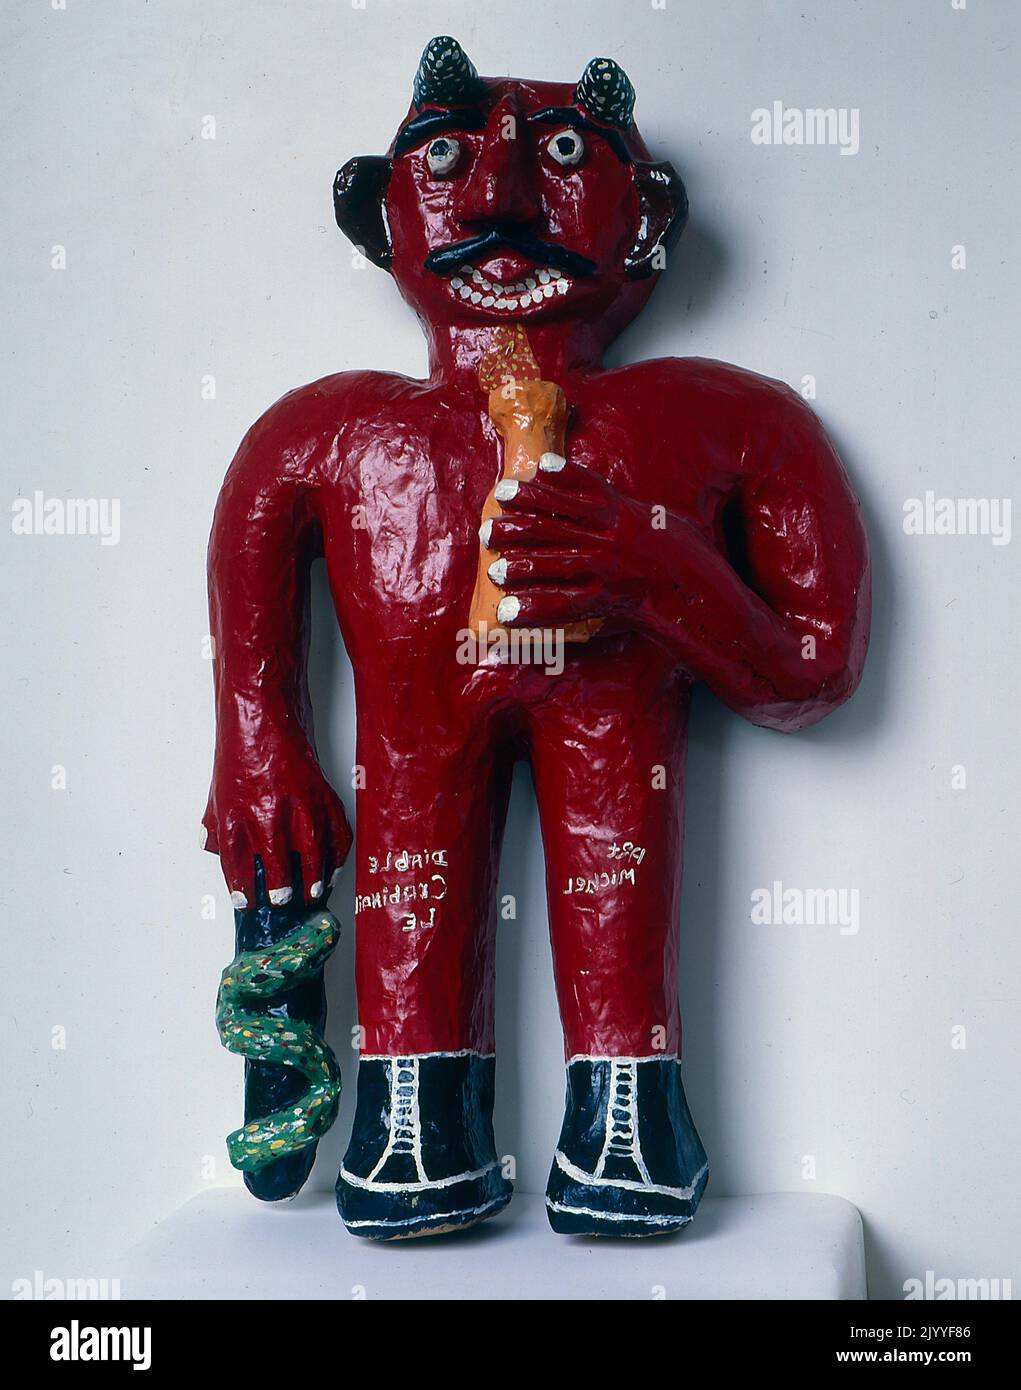 Fotografia a colori di una scultura del 3D di una figura diabolica che tiene una pentola in una mano e un oggetto intrecciato da un serpente nell'altra mano. Foto Stock